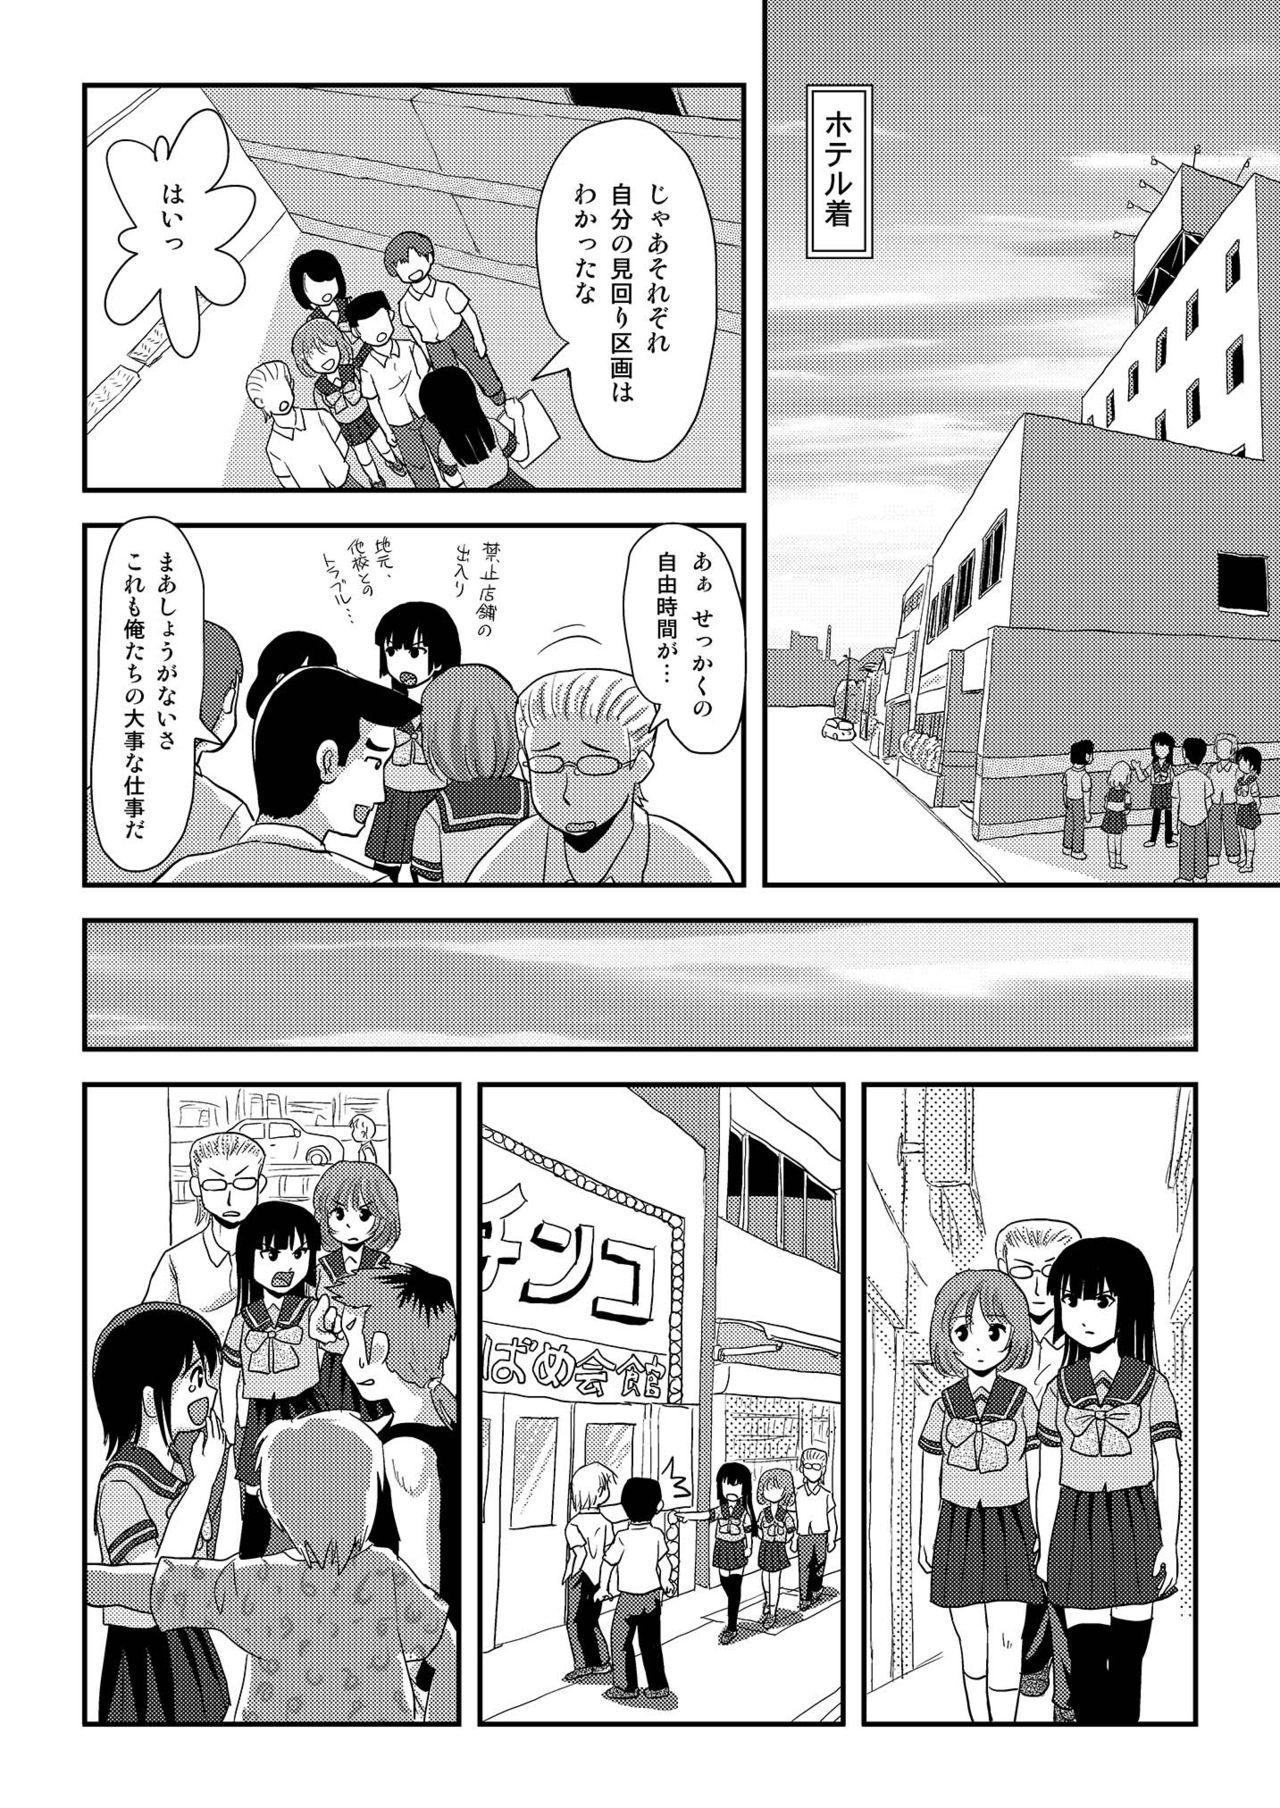 Foreplay Sakura Kotaka no Roshutsubiyori 6 - Original Girl - Page 10